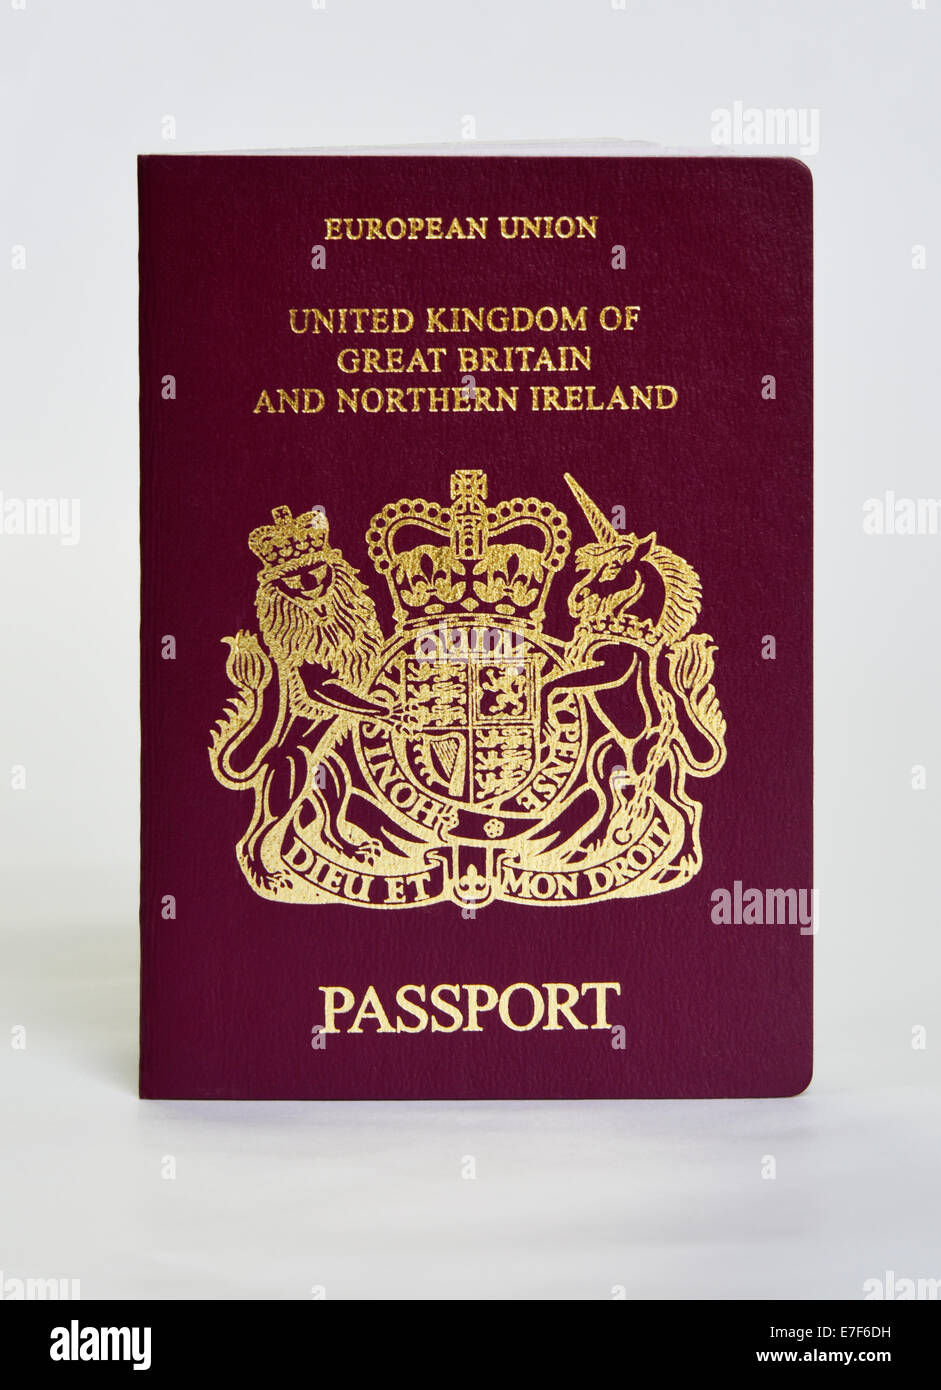 Passaporto. Regno Unito di Gran Bretagna e Irlanda del Nord. Unione Europea. Foto Stock